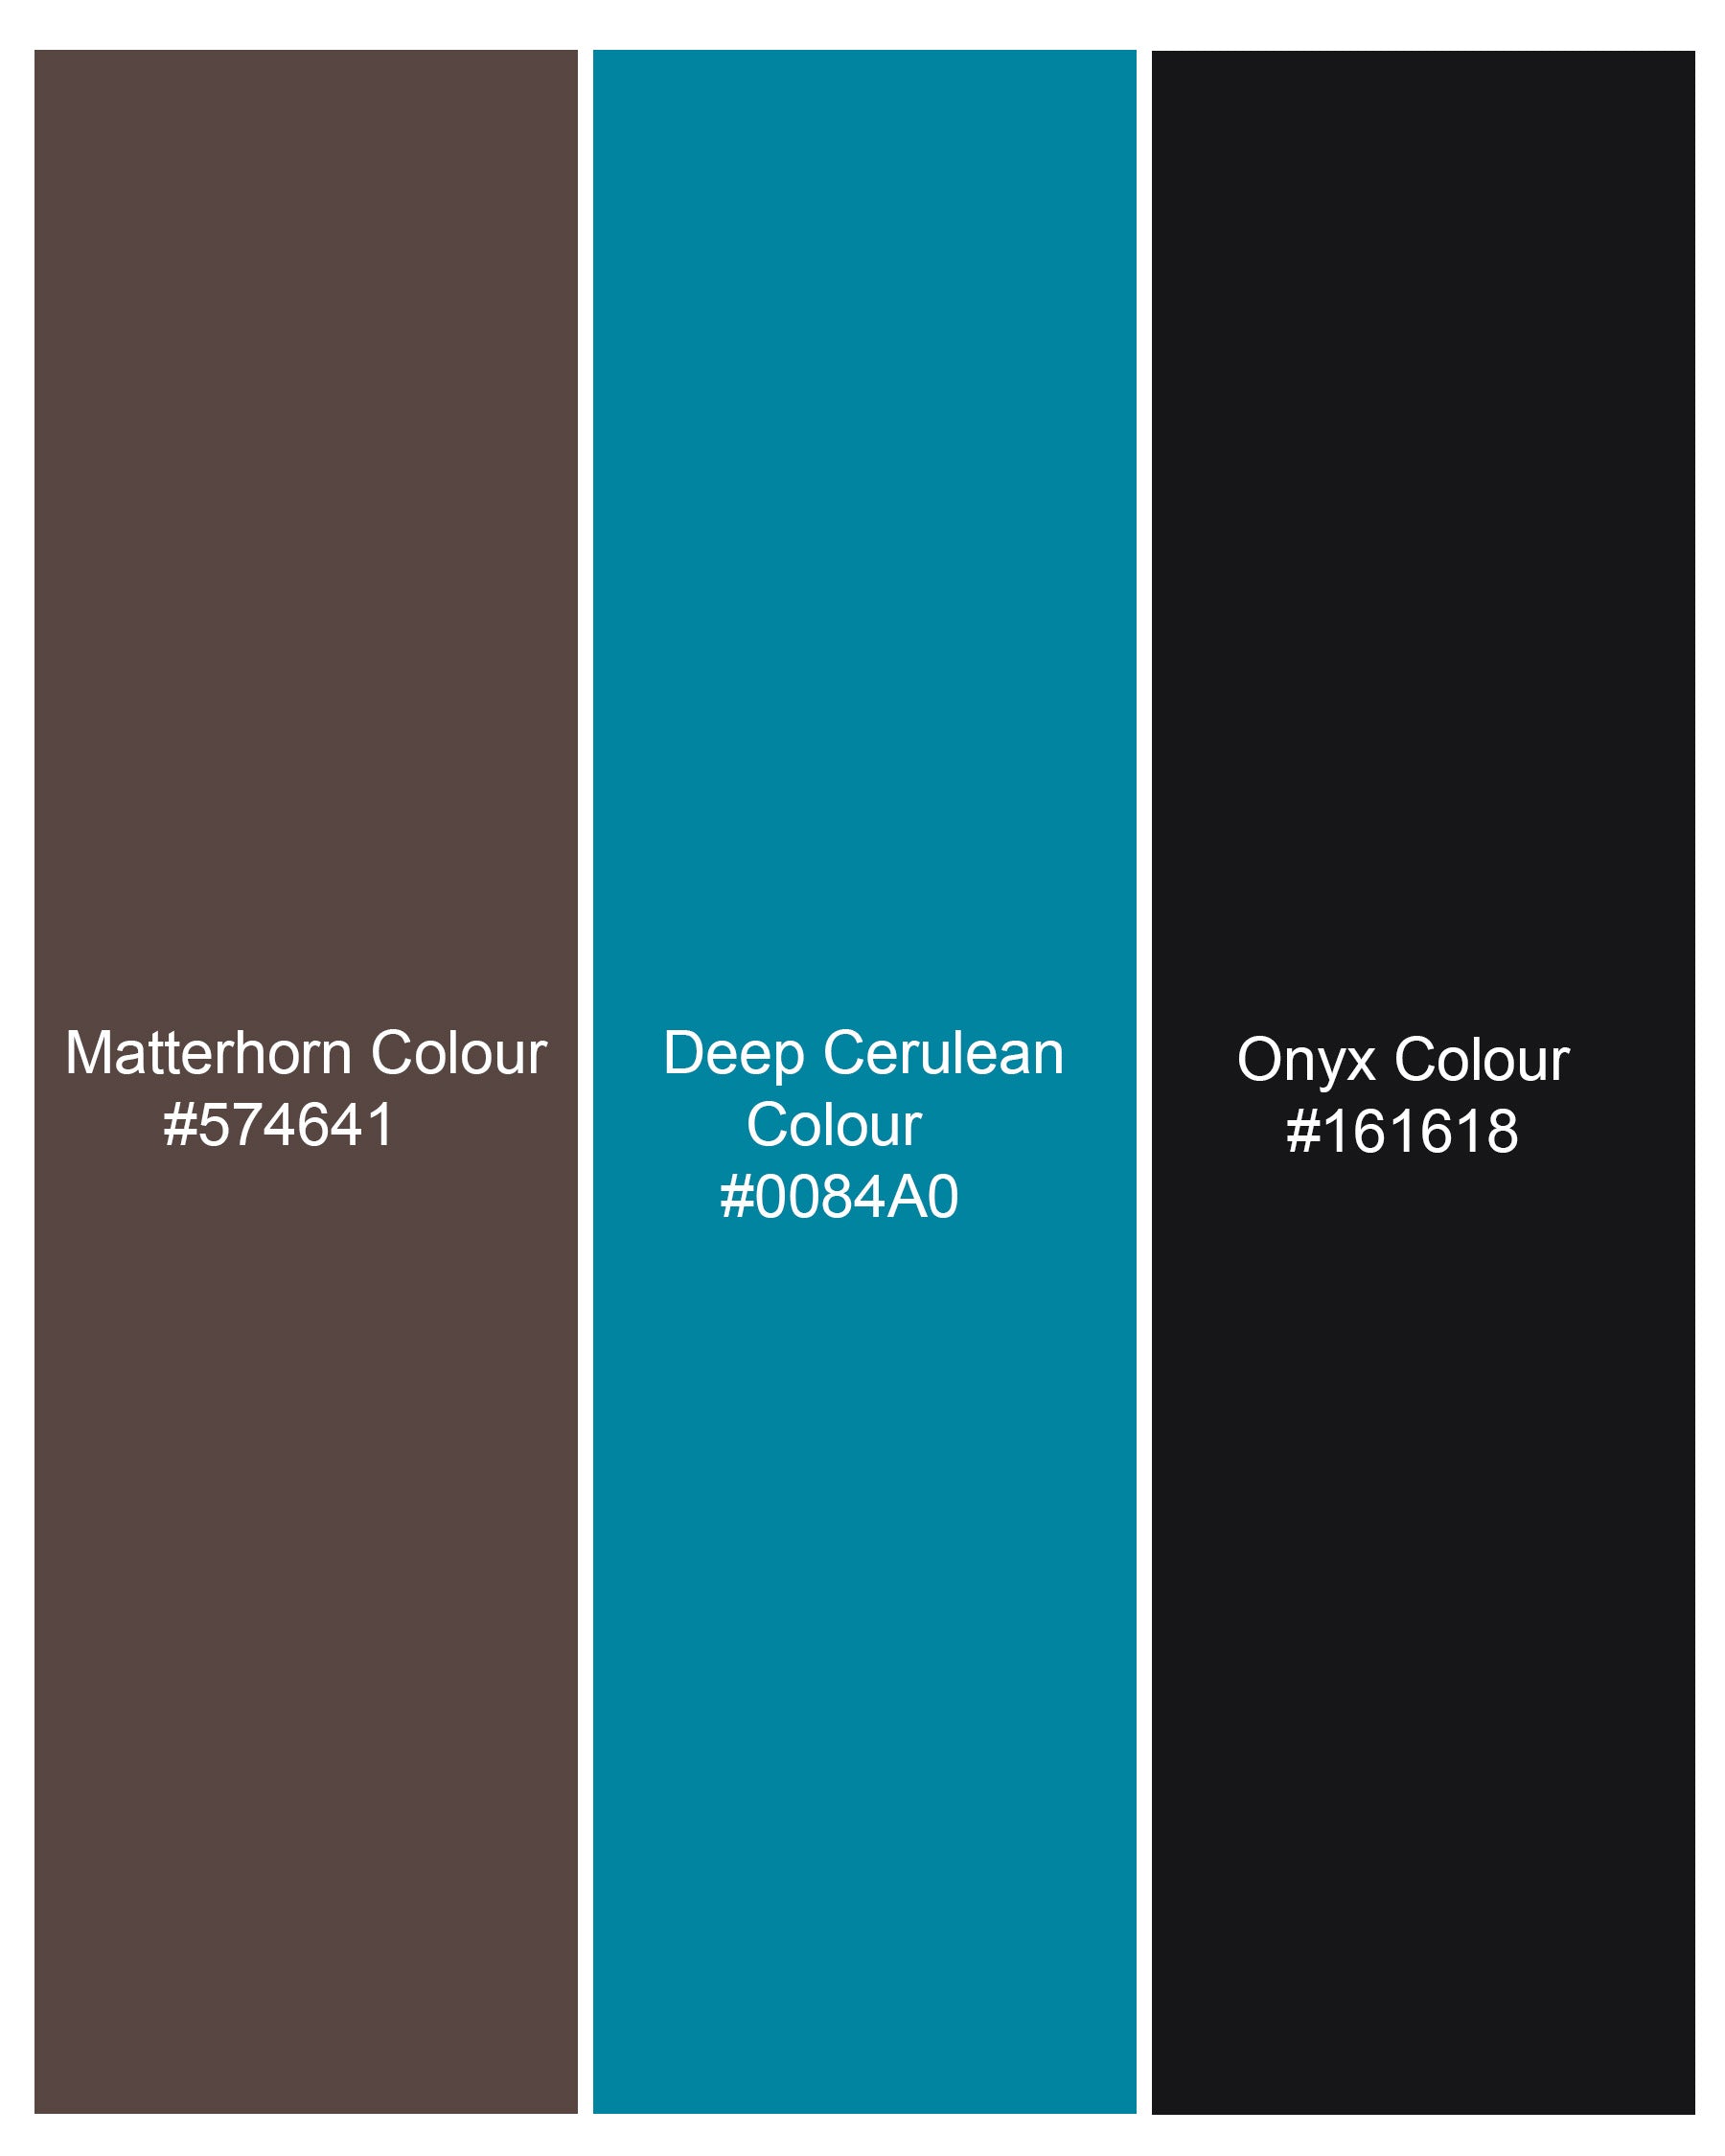 Matterhorn Brown and Deep Cerulean Blue Dinosaur Printed Premium Cotton Shirt 8219-BLK -38,8219-BLK -H-38,8219-BLK -39,8219-BLK -H-39,8219-BLK -40,8219-BLK -H-40,8219-BLK -42,8219-BLK -H-42,8219-BLK -44,8219-BLK -H-44,8219-BLK -46,8219-BLK -H-46,8219-BLK -48,8219-BLK-H-48,8219-BLK -50,8219-BLK -H-50,8219-BLK -52,8219-BLK -H-52